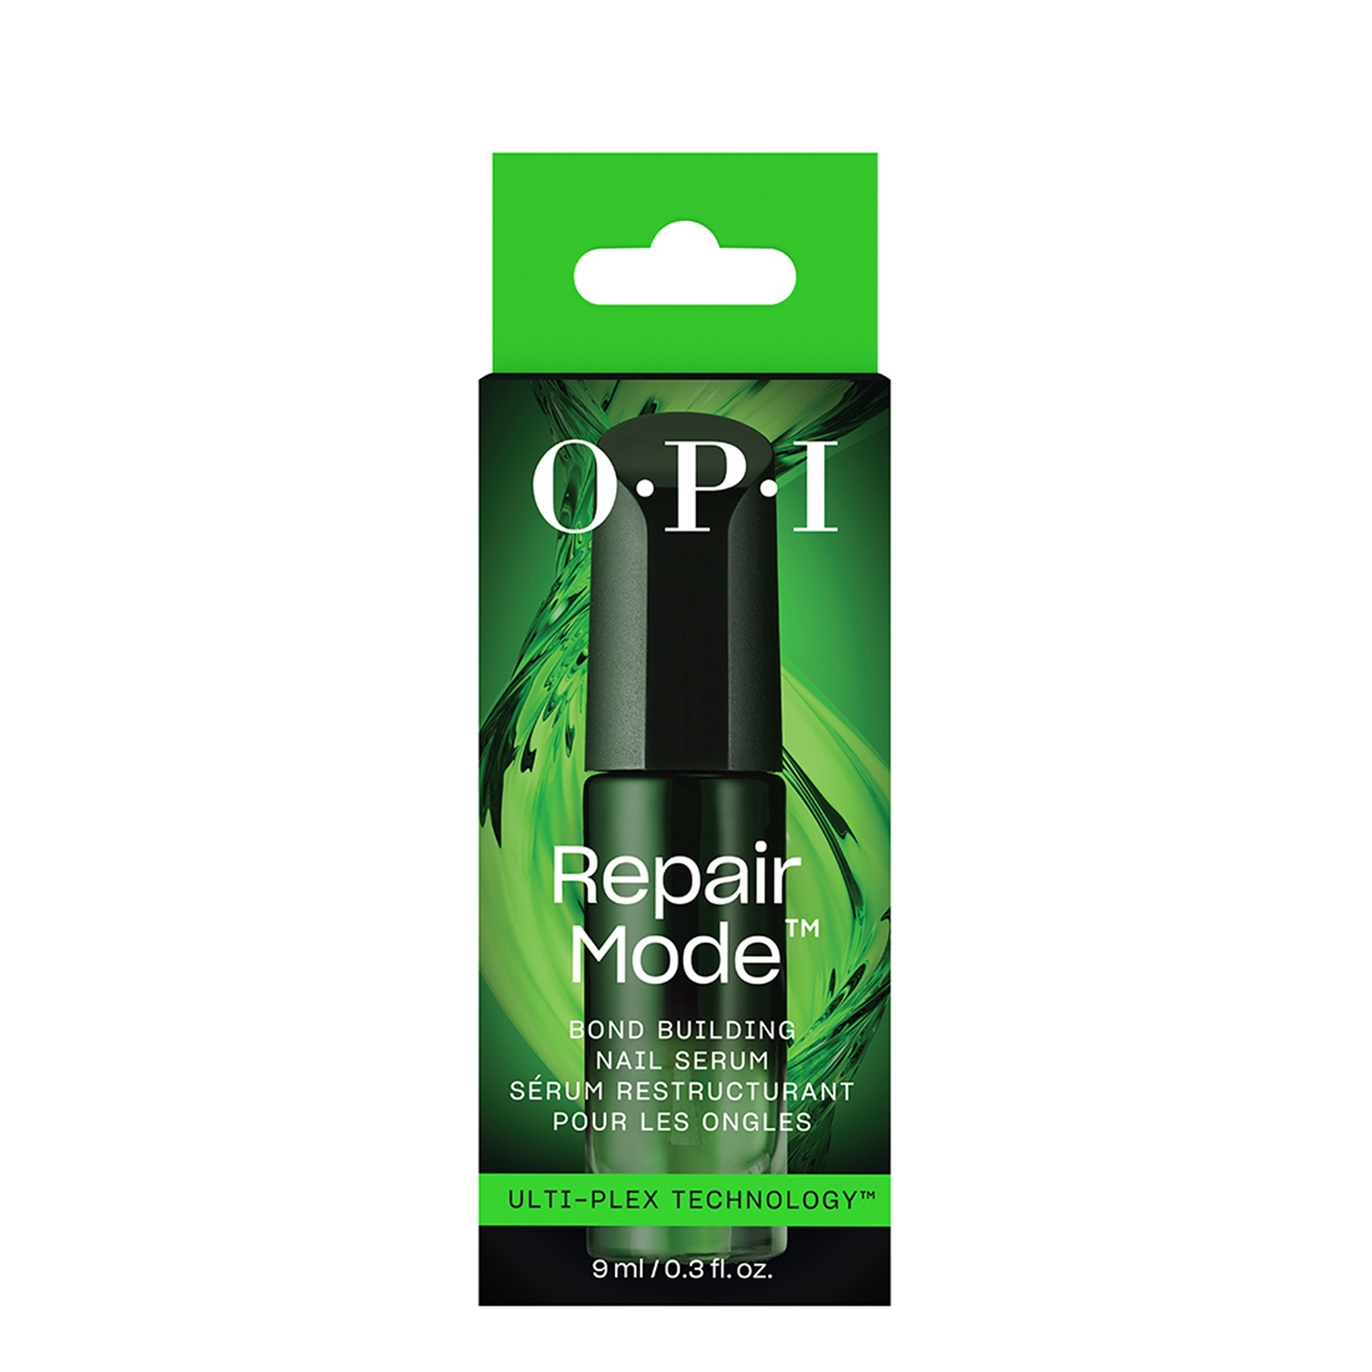 Opi Repair Mode Bond Building Nail Serum 9ml